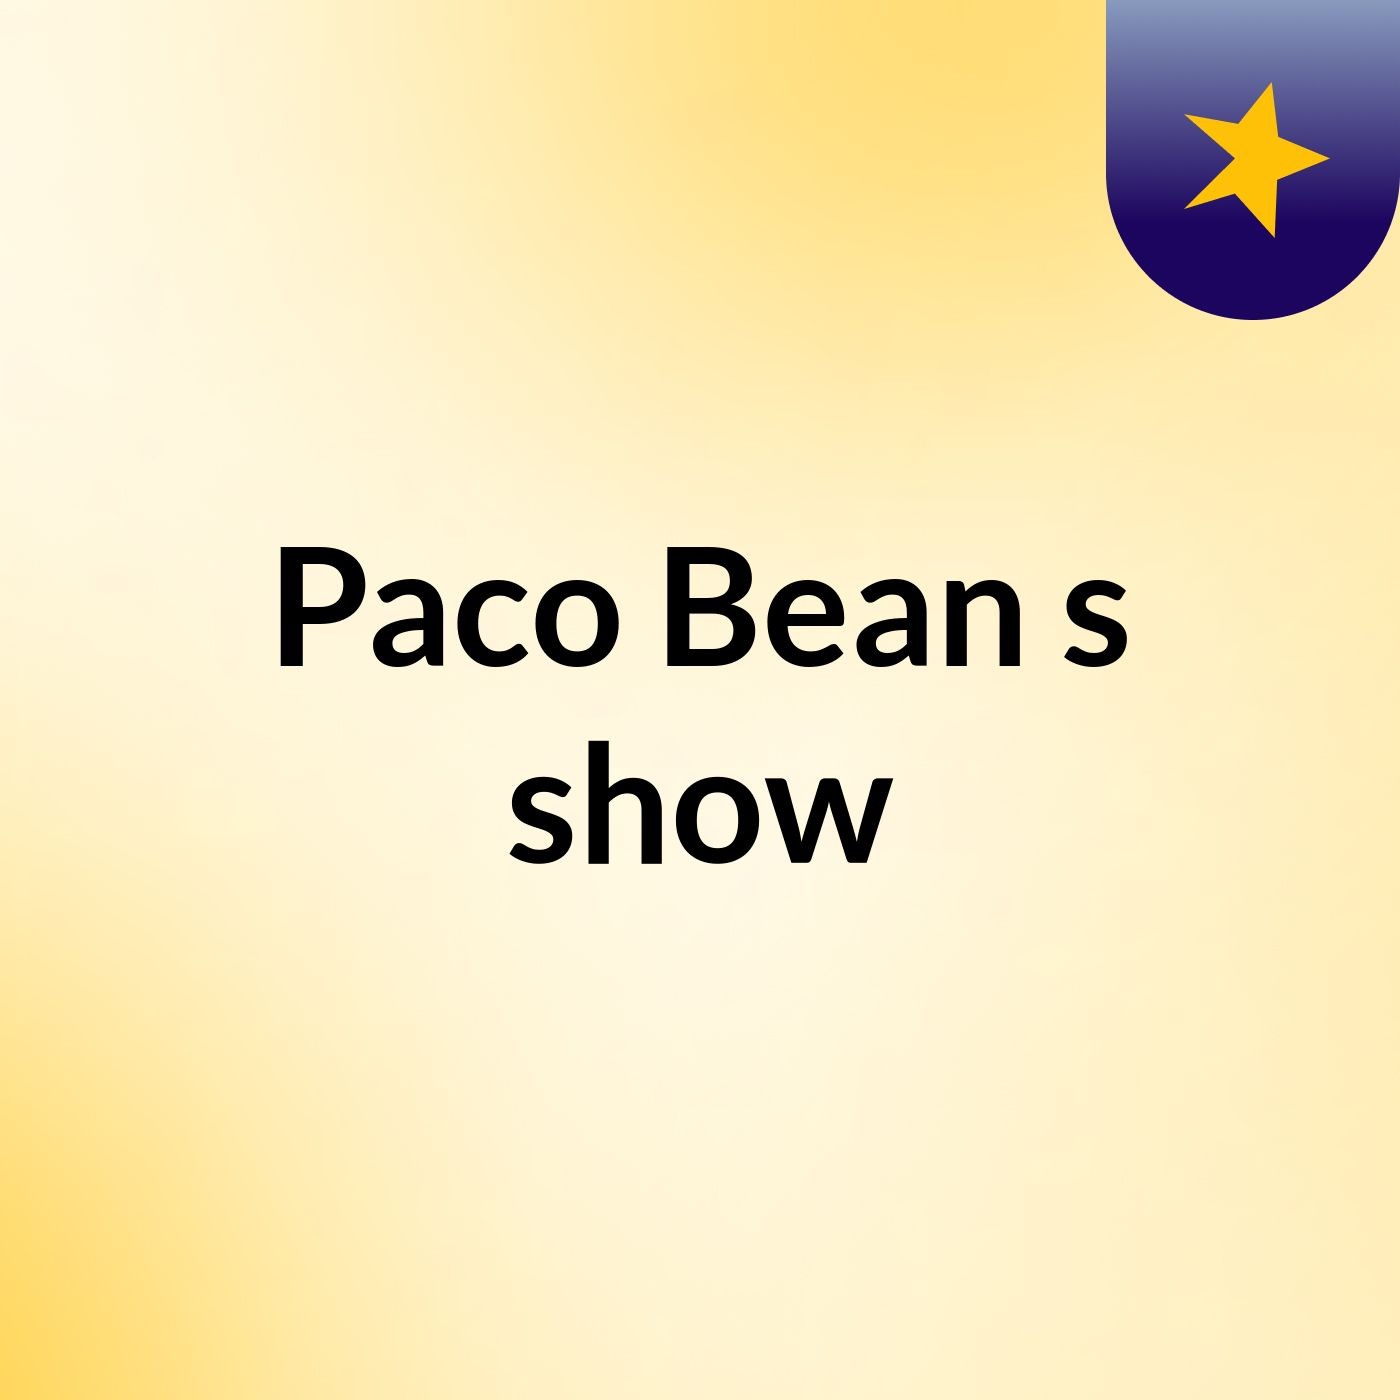 Paco Bean's show